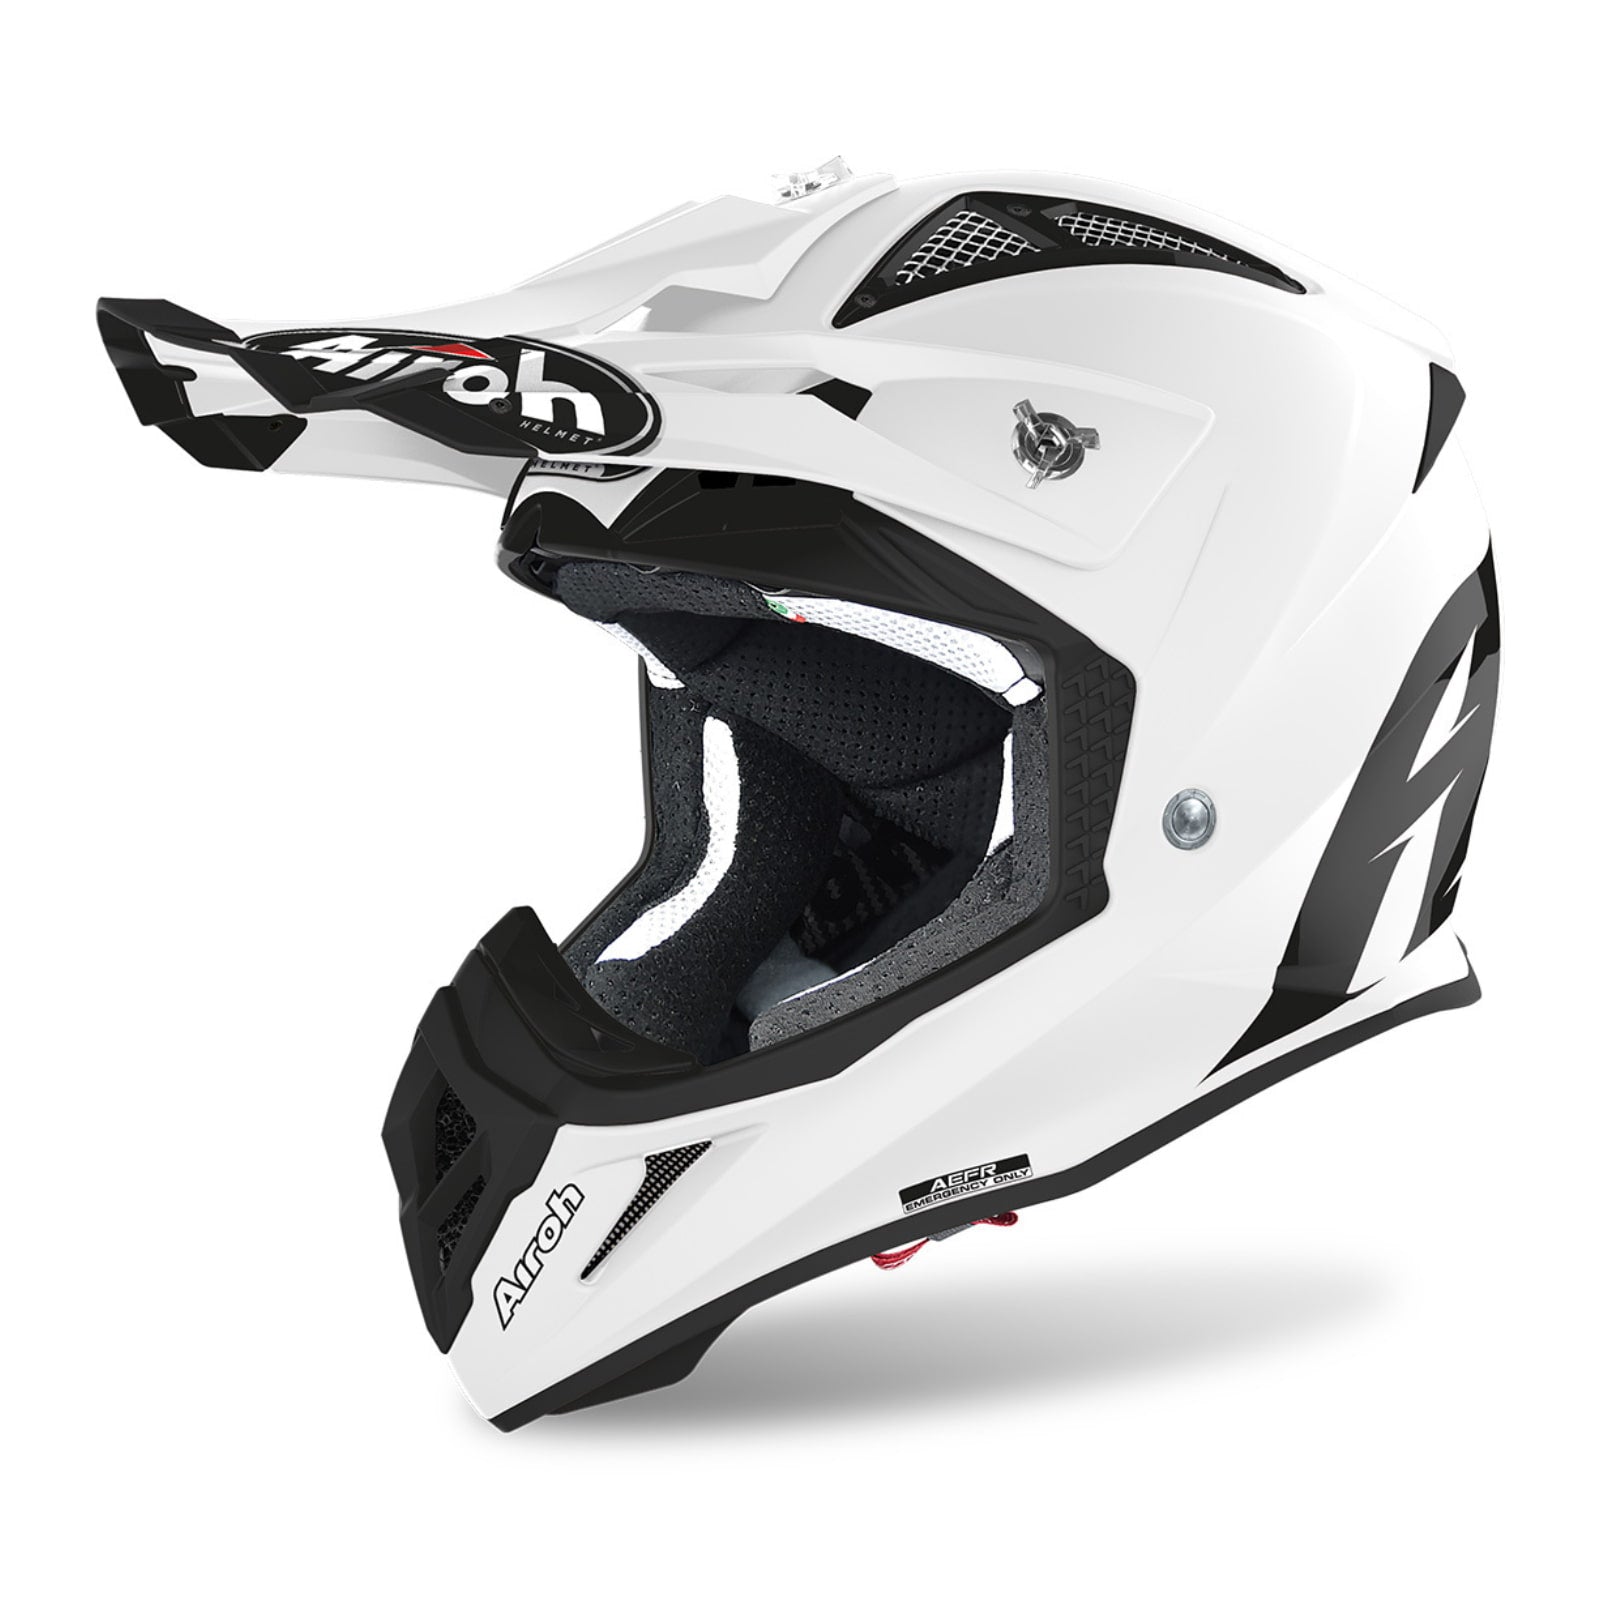 Airoh アイロー オフロードヘルメット Lサイズ簡易梱包にて発送いたします